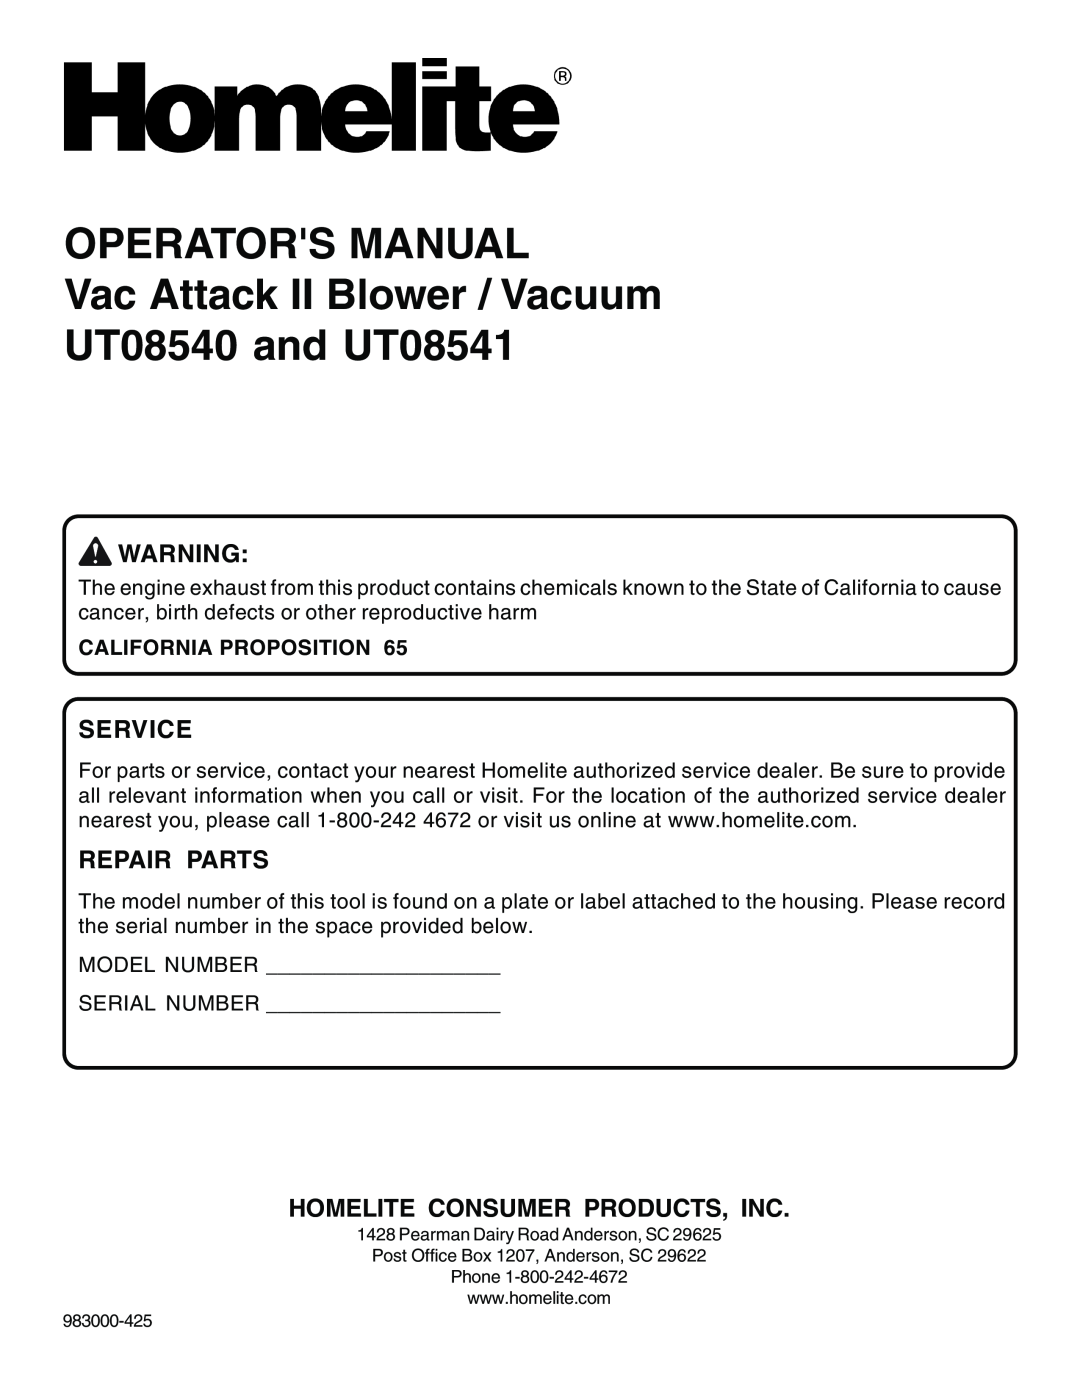 Homelite UT08541, UT08540 manual Service, Repair Parts, Homelite Consumer Products, Inc, California Proposition 